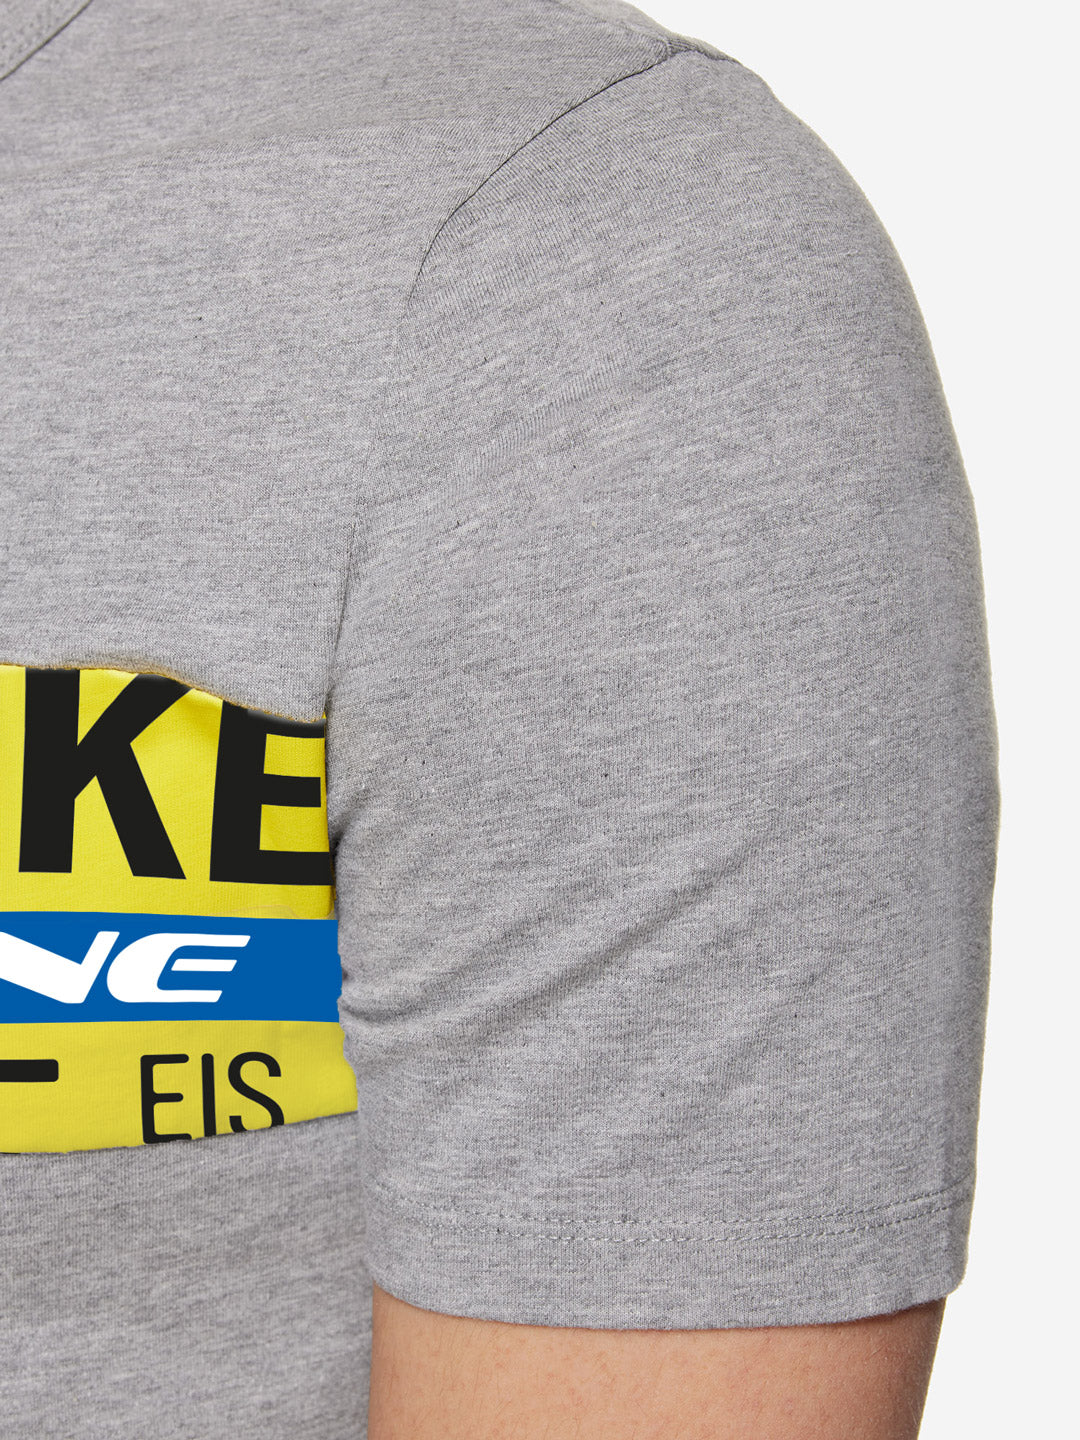 Ijsboerke - The Remix - T-shirt